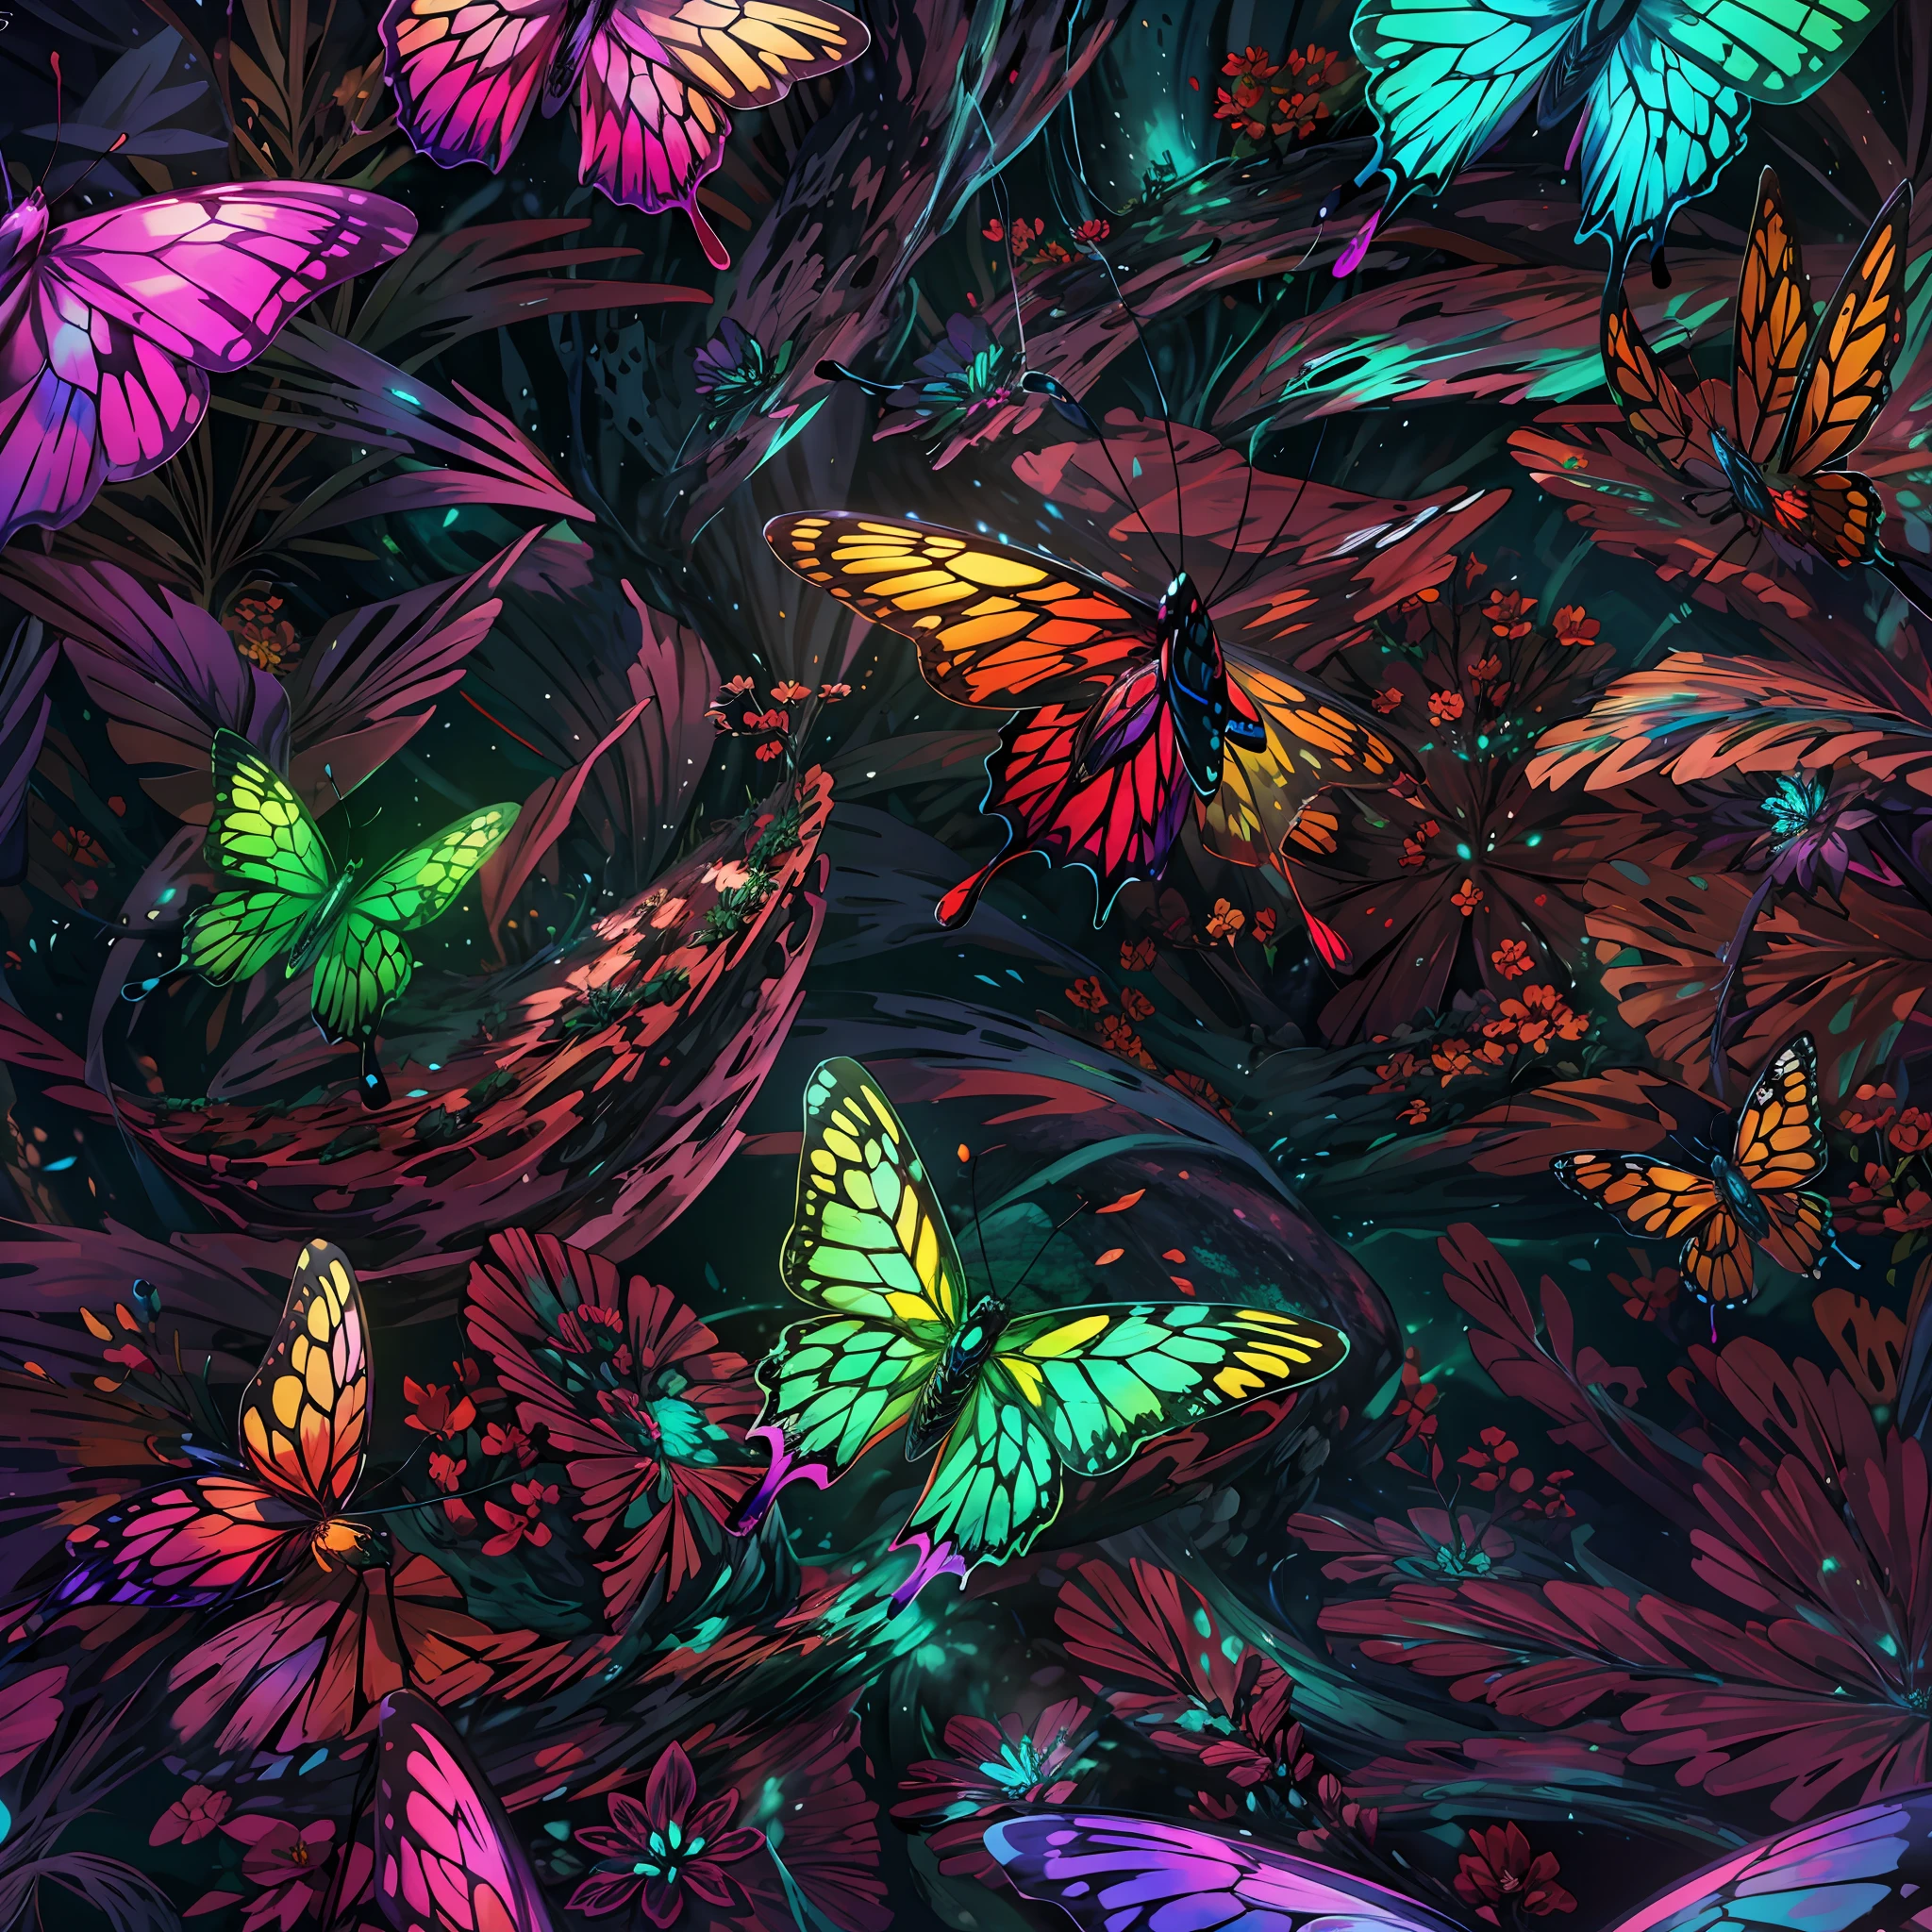 close shot  of a 顏色ful butterfly, 大翅膀, 詳細的, 詳細的 wings, 蝴蝶在外星森林裡的一片大葉子上飛翔 , 發光的翅膀, 水晶般的 ,重點, 外星風景背景 .休息,詳細的,實際的,4k highly 詳細的 digital art,辛烷渲染, 生物發光, 休息 8K resolution concept art, 現實主義,由Mappa工作室設計,傑作,最好的品質,官方藝術,插圖,清晰的線條,(涼爽的_顏色),完美的構圖,荒謬的, 幻想,重點ed,三分法,